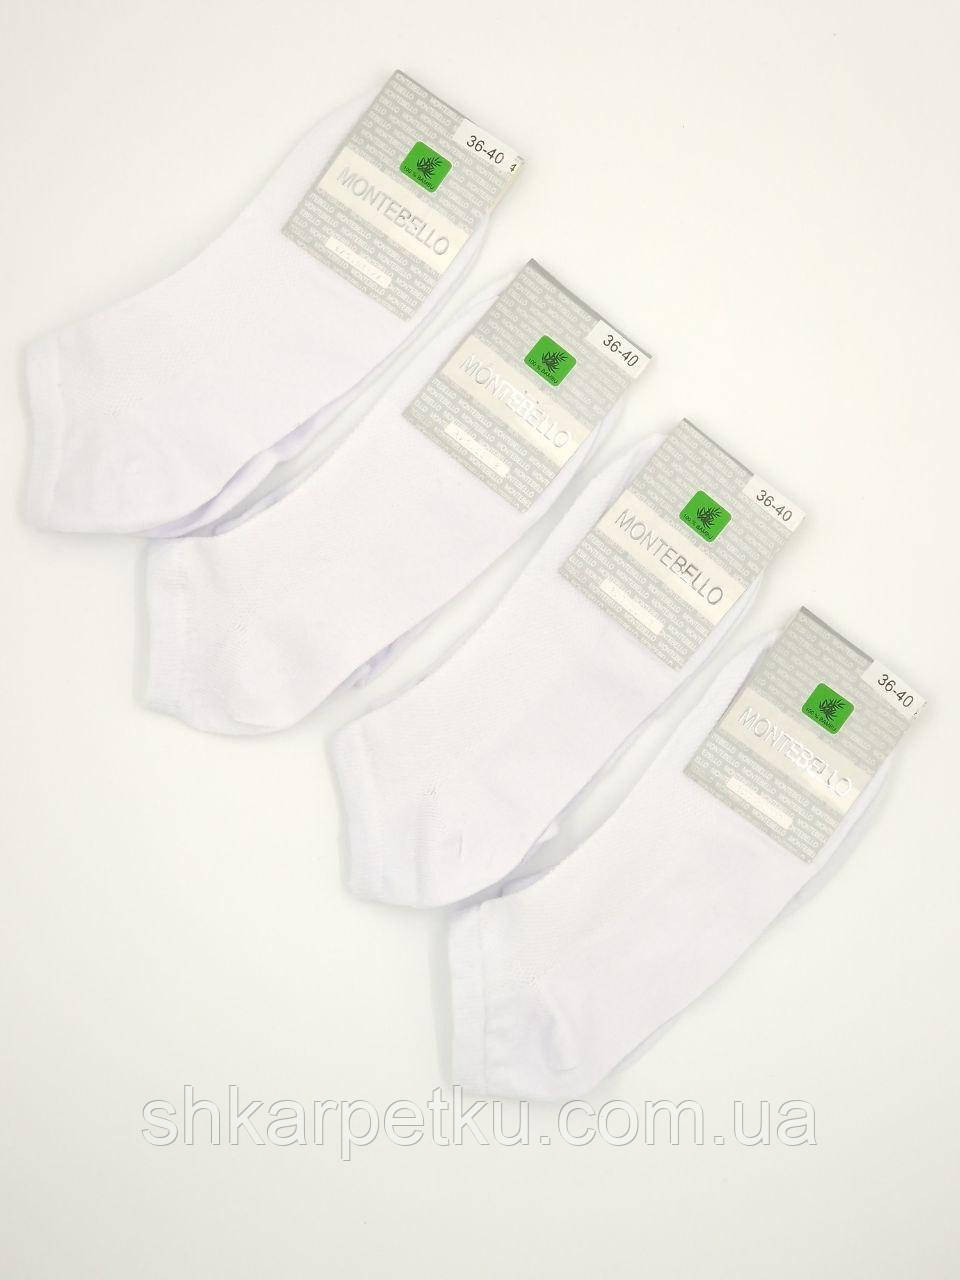 Жіночі короткі шкарпетки стрейчеві Montebello сіточка з 35-40 12 пар/уп білі